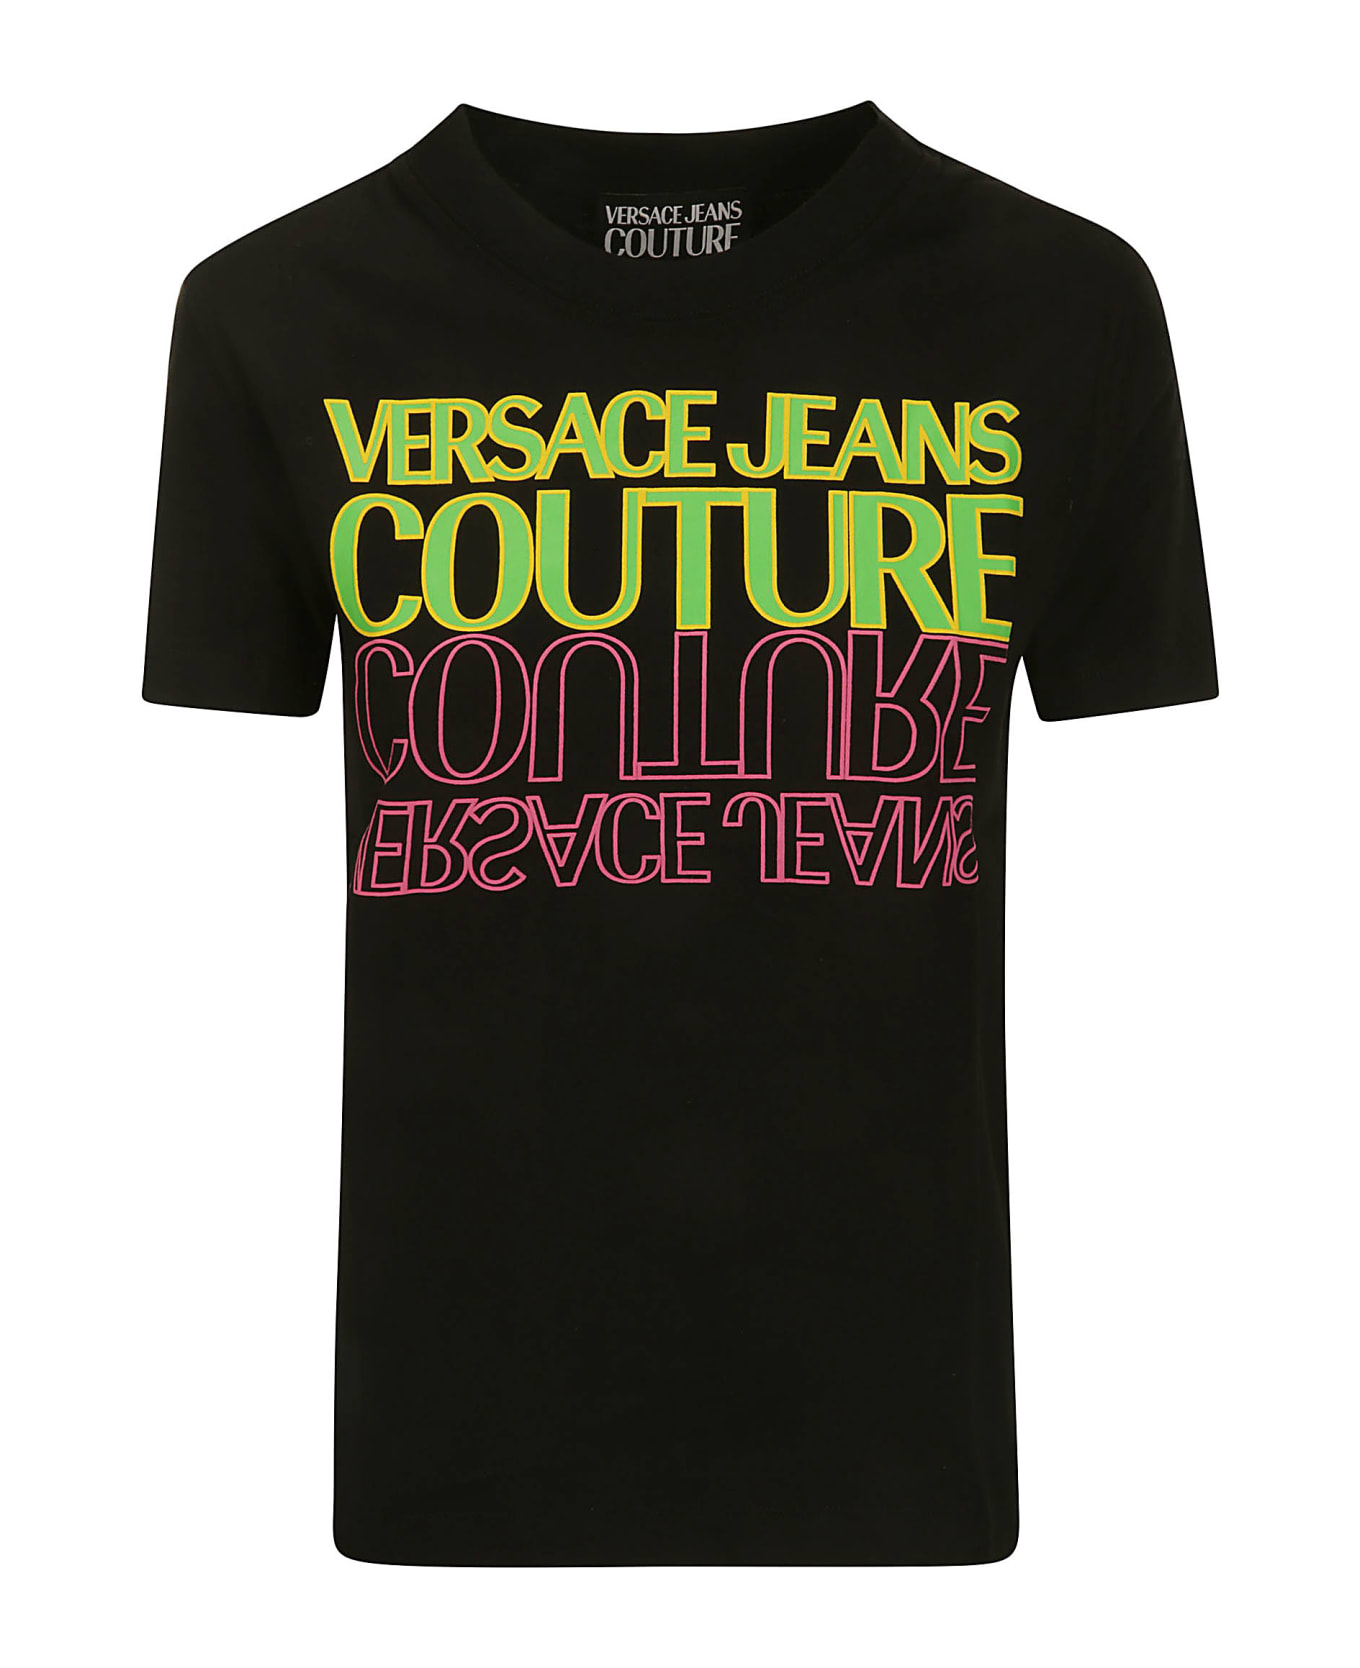 Versace Jeans Couture 76dp613 R Upside Down C T-shirt - BLACK